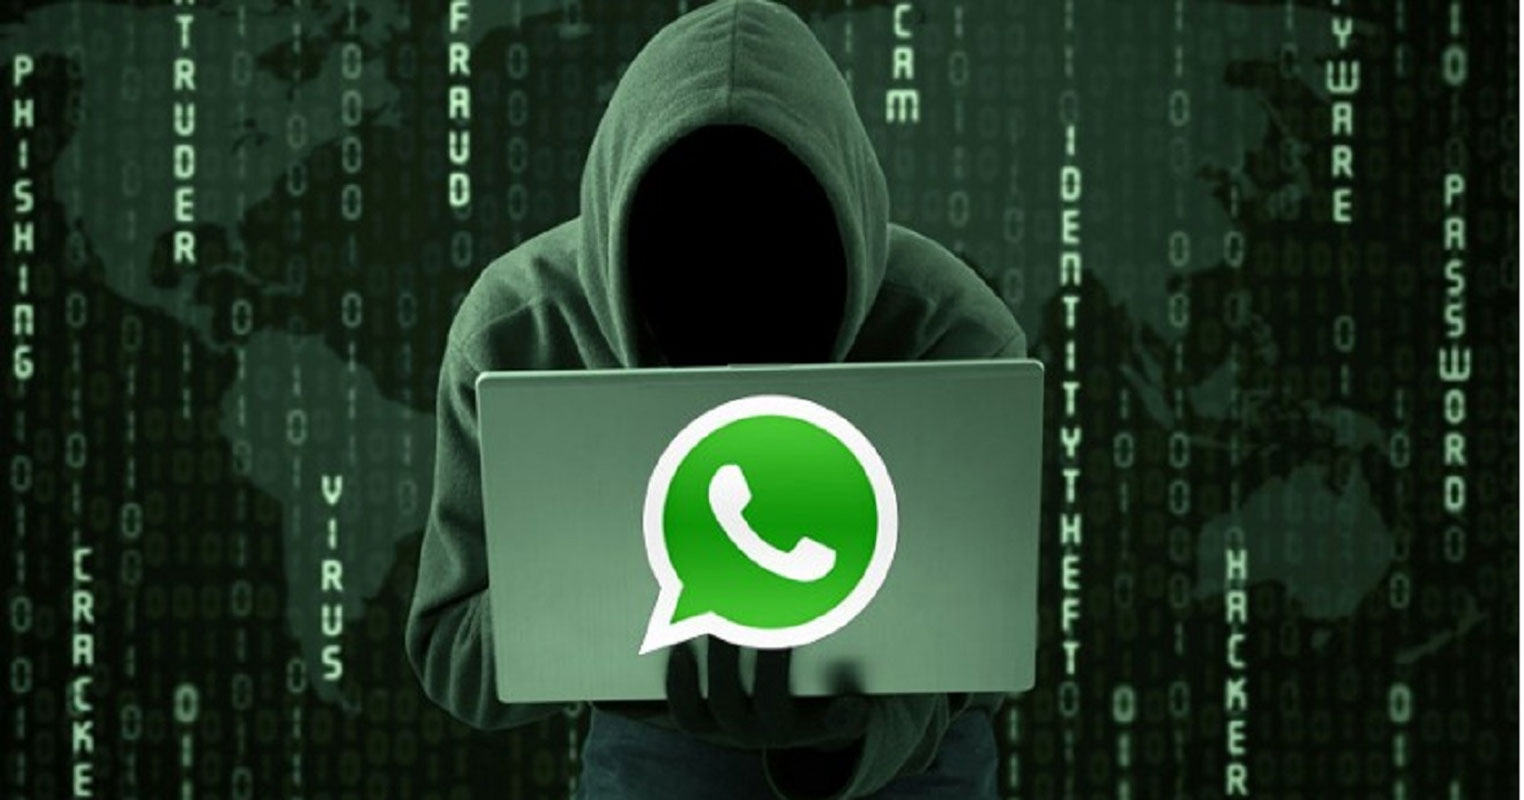 Golpistas clonam celular e usa o WhatsApp para pedir dinheiro em seu nome